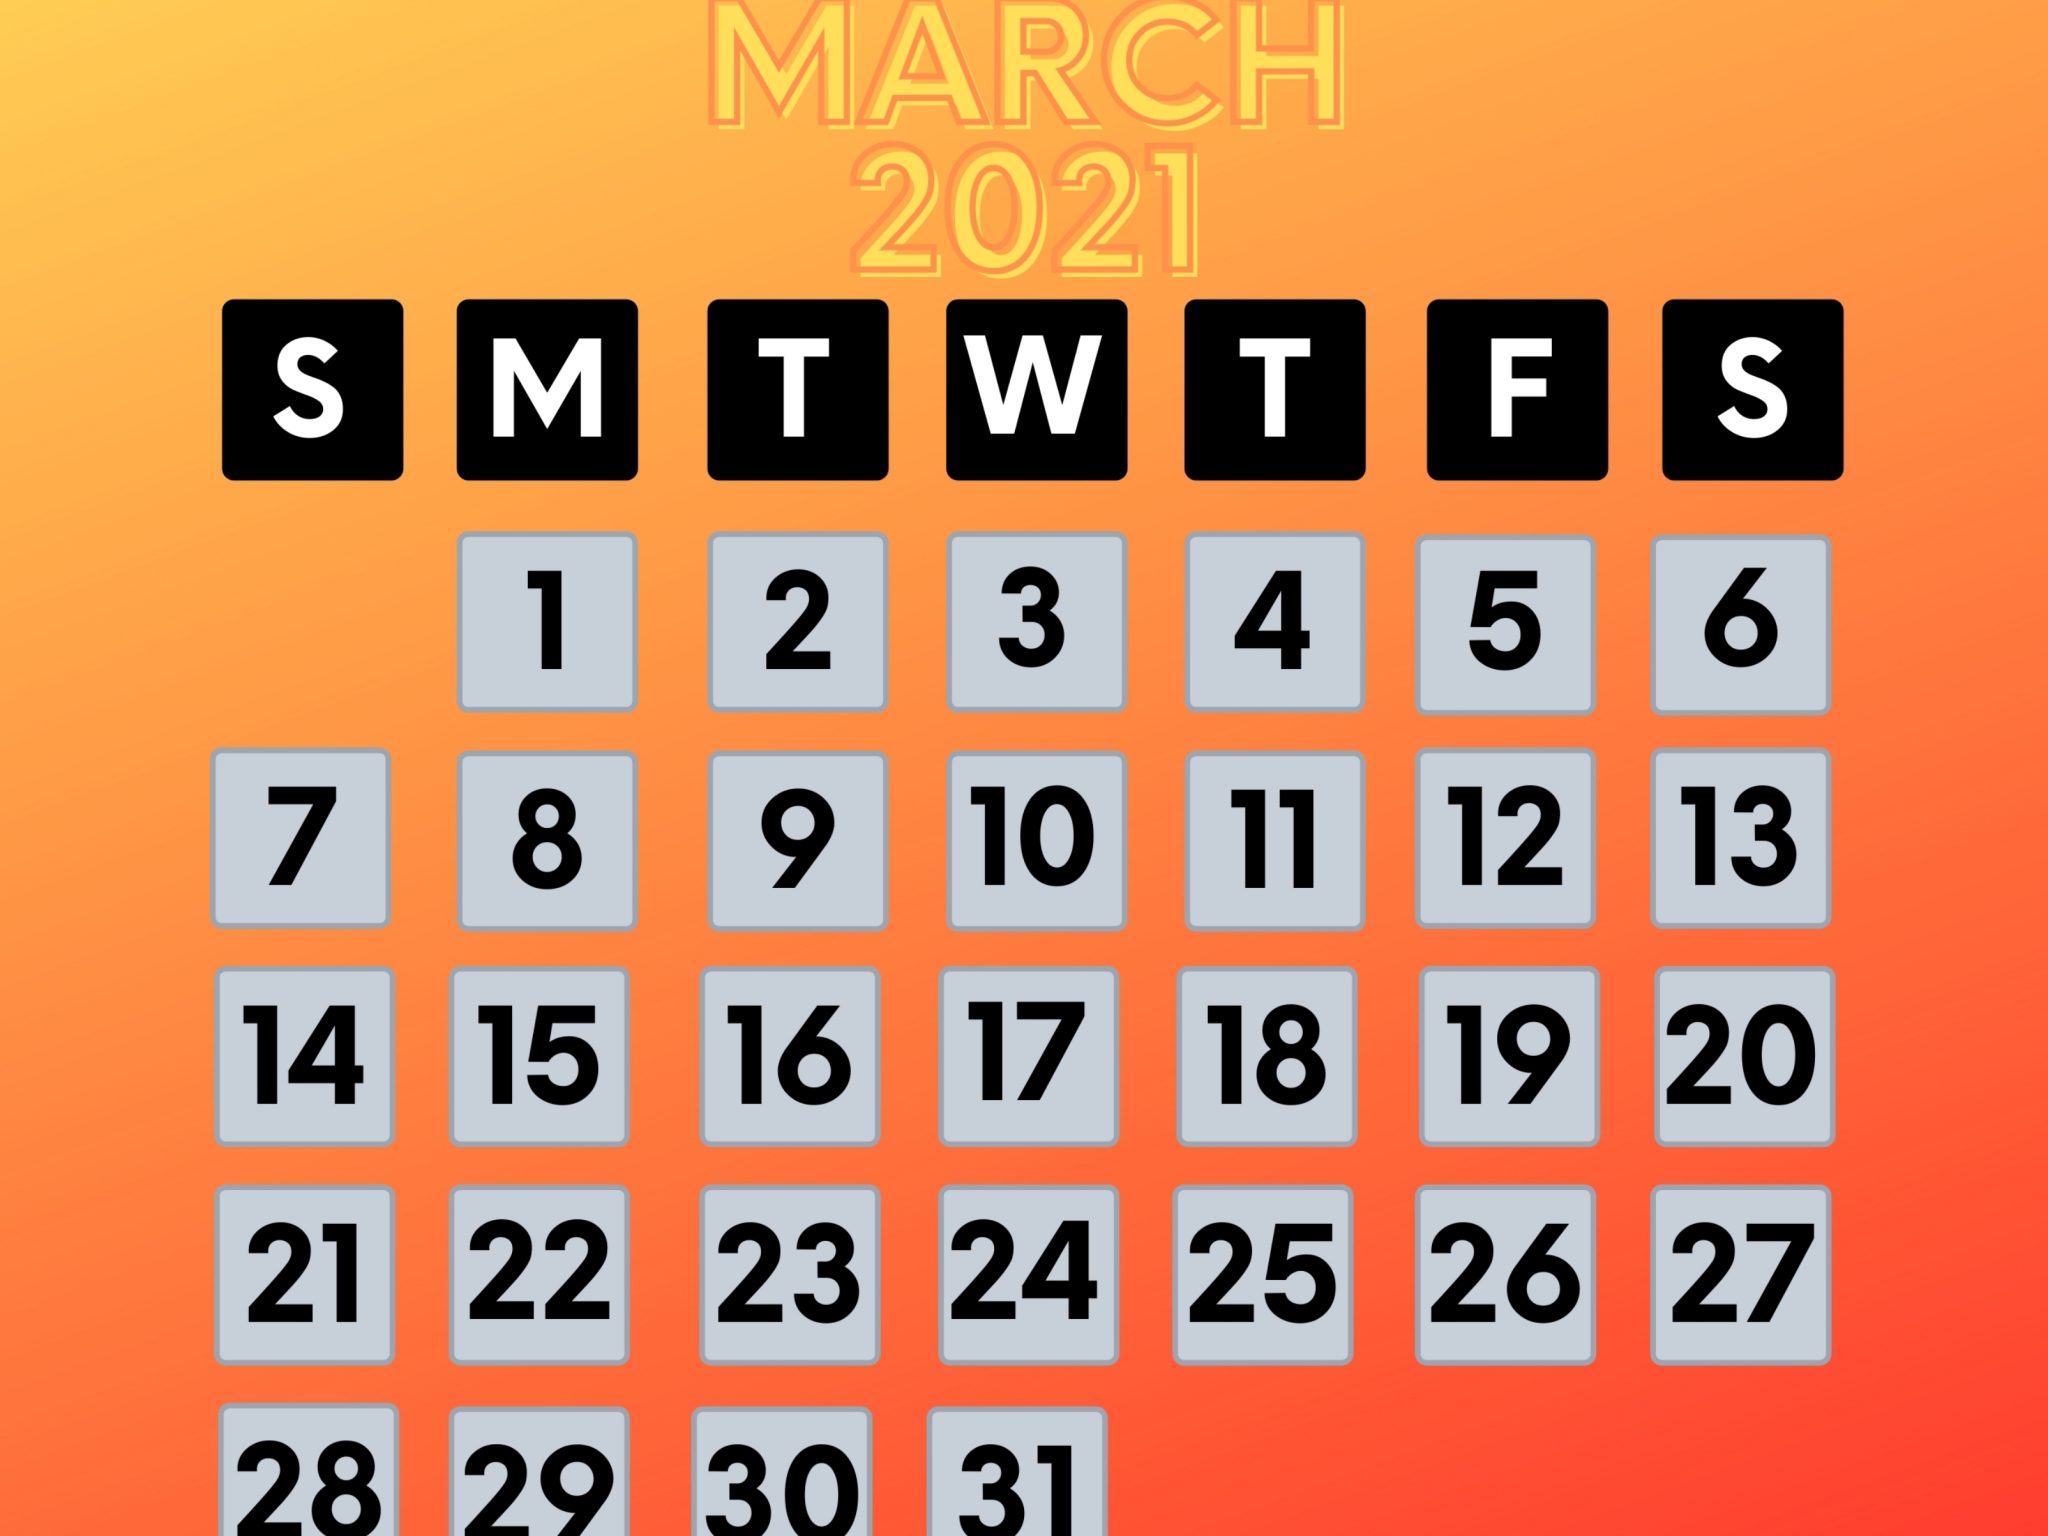 2048x1536 wallpaper March 2021 Calendar iPad Wallpaper 2048x1536 pixels resolution